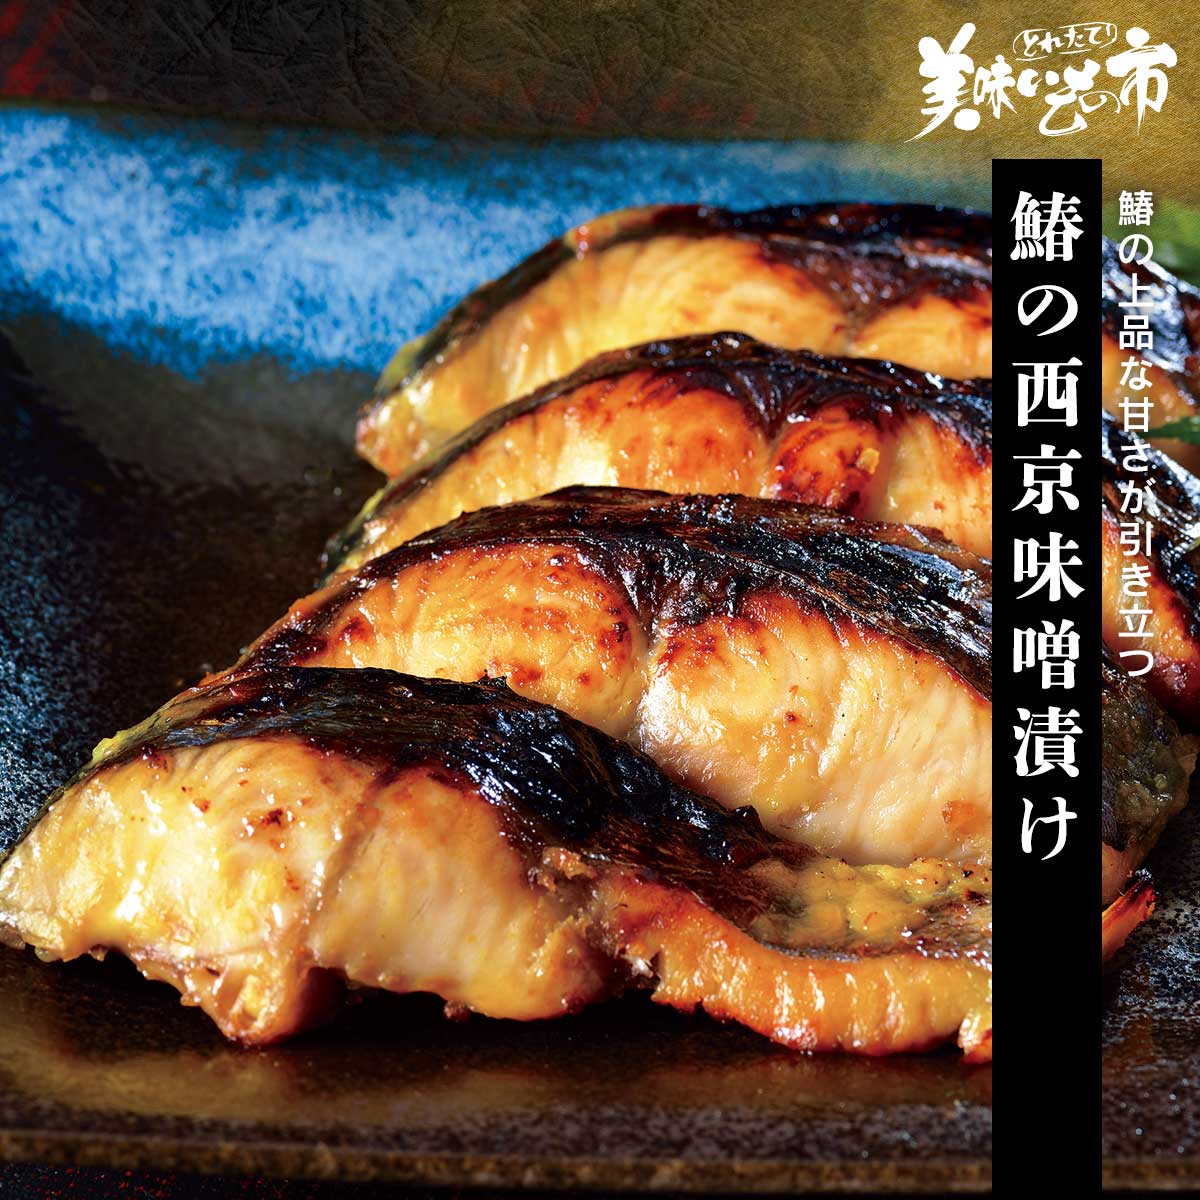 美味しい漬け魚の一つとして挙げられる鰆。 まろやかな西京味噌が、ふっくらと程よい身の締まりを持つ鰆の上品な味を一層引き立てます。鰆の上品な甘さが引き立つ 美味しい漬け魚の一つとして挙げられる鰆。 まろやかな西京味噌が、ふっくらと程よい身の締まりを持つ鰆の上品な味を一層引き立てます。 鰆の西京味噌漬け 内容量 鰆西京漬け（80g×2切）×4袋 食塩相当量 0.8g/100g 原産地 鰆（国産） 加工地 北海道小樽 賞味期限 冷凍：2024年6月1日（冷凍調理） ※通常より賞味期限が短い商品です！ アレルギー表示 原材料の一部に大豆を含む